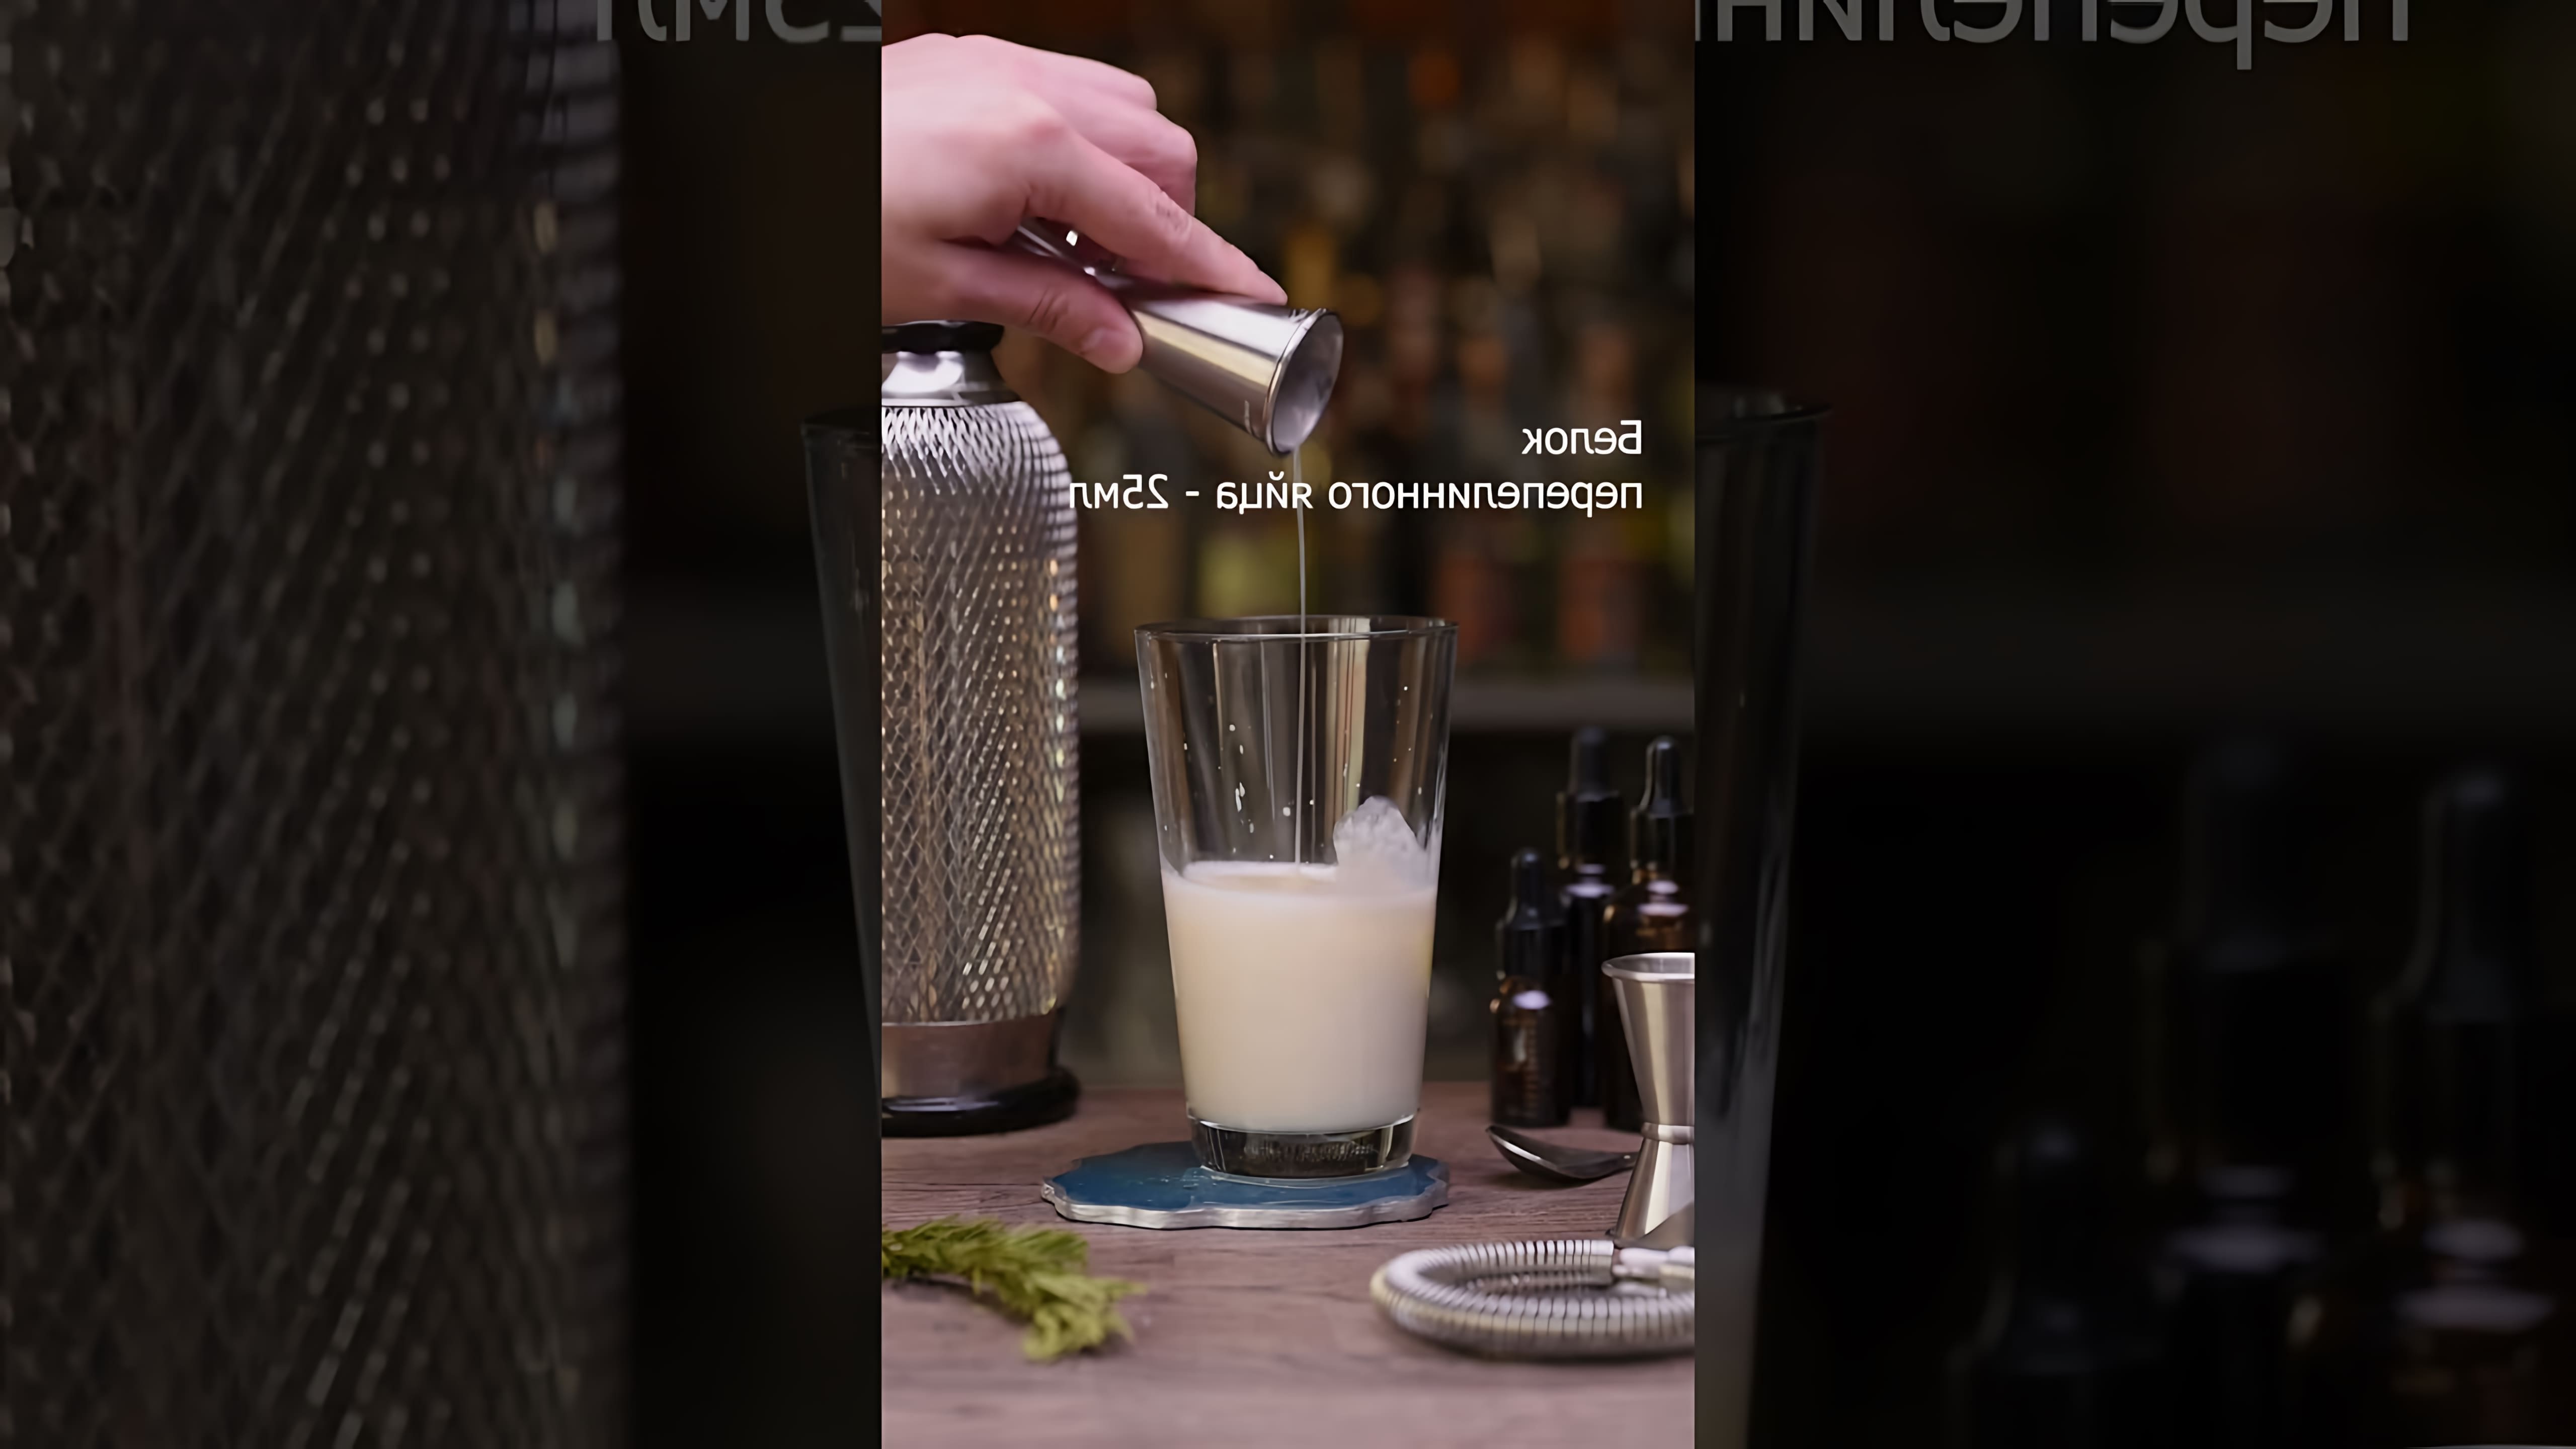 "Коктейль Рамос джин физ: время выпускать джина!" - это видео-ролик, который рассказывает о рецепте и приготовлении коктейля Рамос джин физ